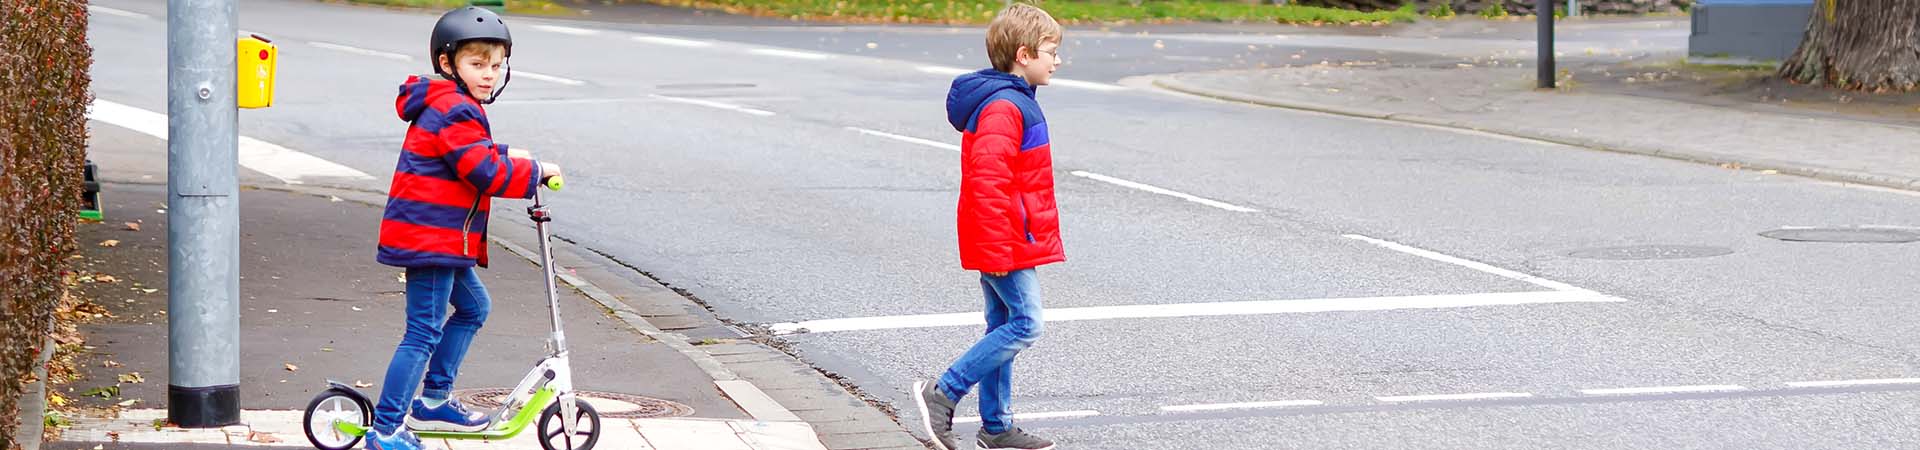 Enfants dans la circulation - les enfants traversent une rue